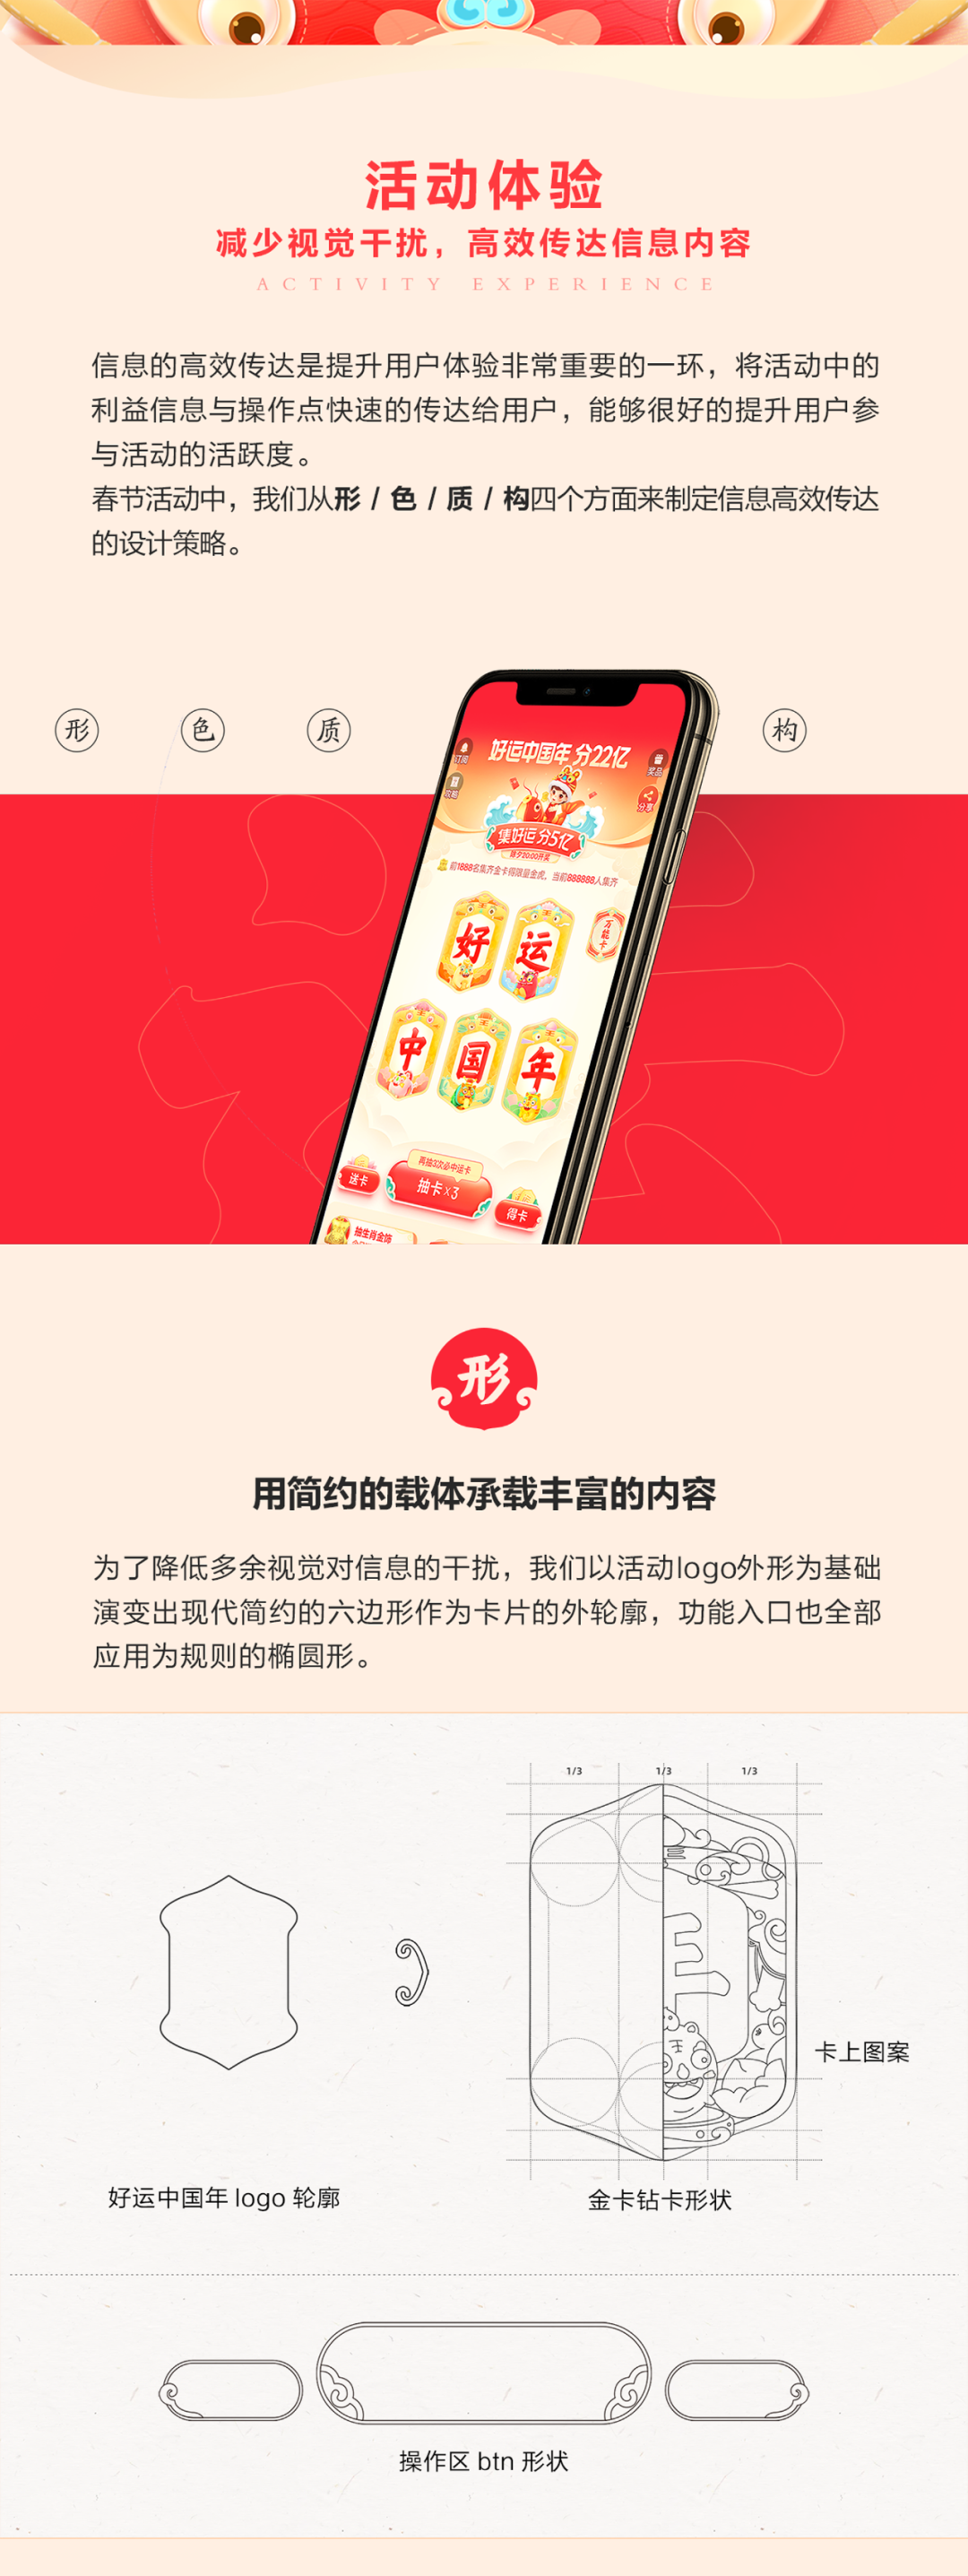 2022年好运中国年春节活动设计复盘 - 图8